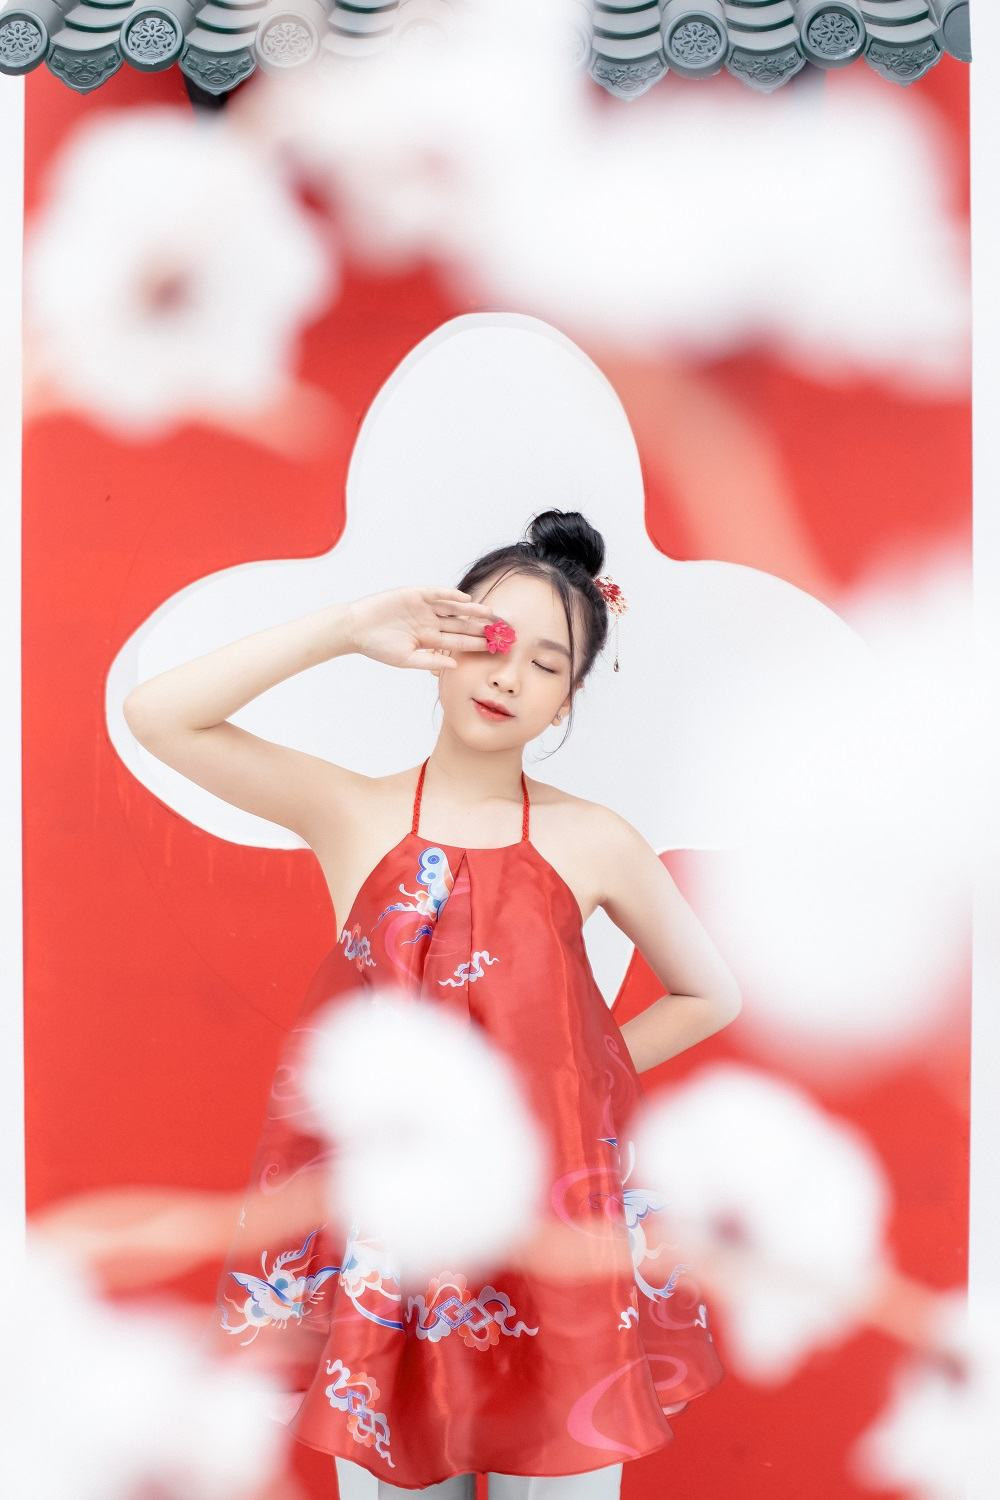 Talent nhí 12 tuổi cover ca khúc nhạc xuân của Hồ Hoài Anh, Châu Đăng Khoa